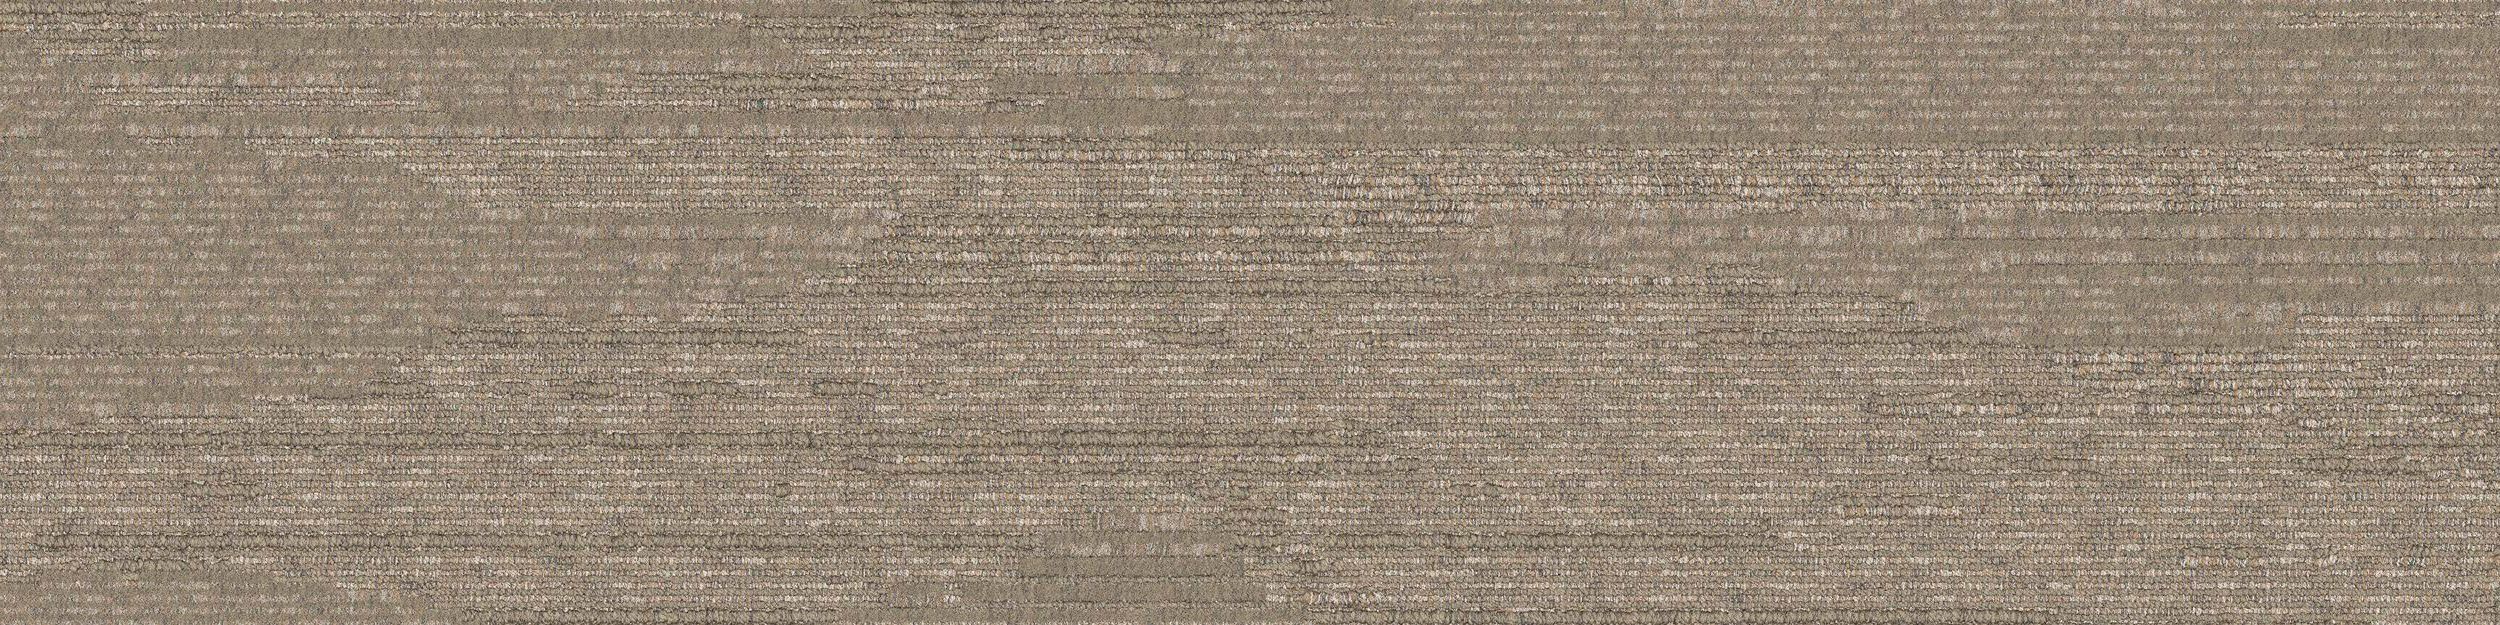 UR501 Carpet Tile In Flax imagen número 2